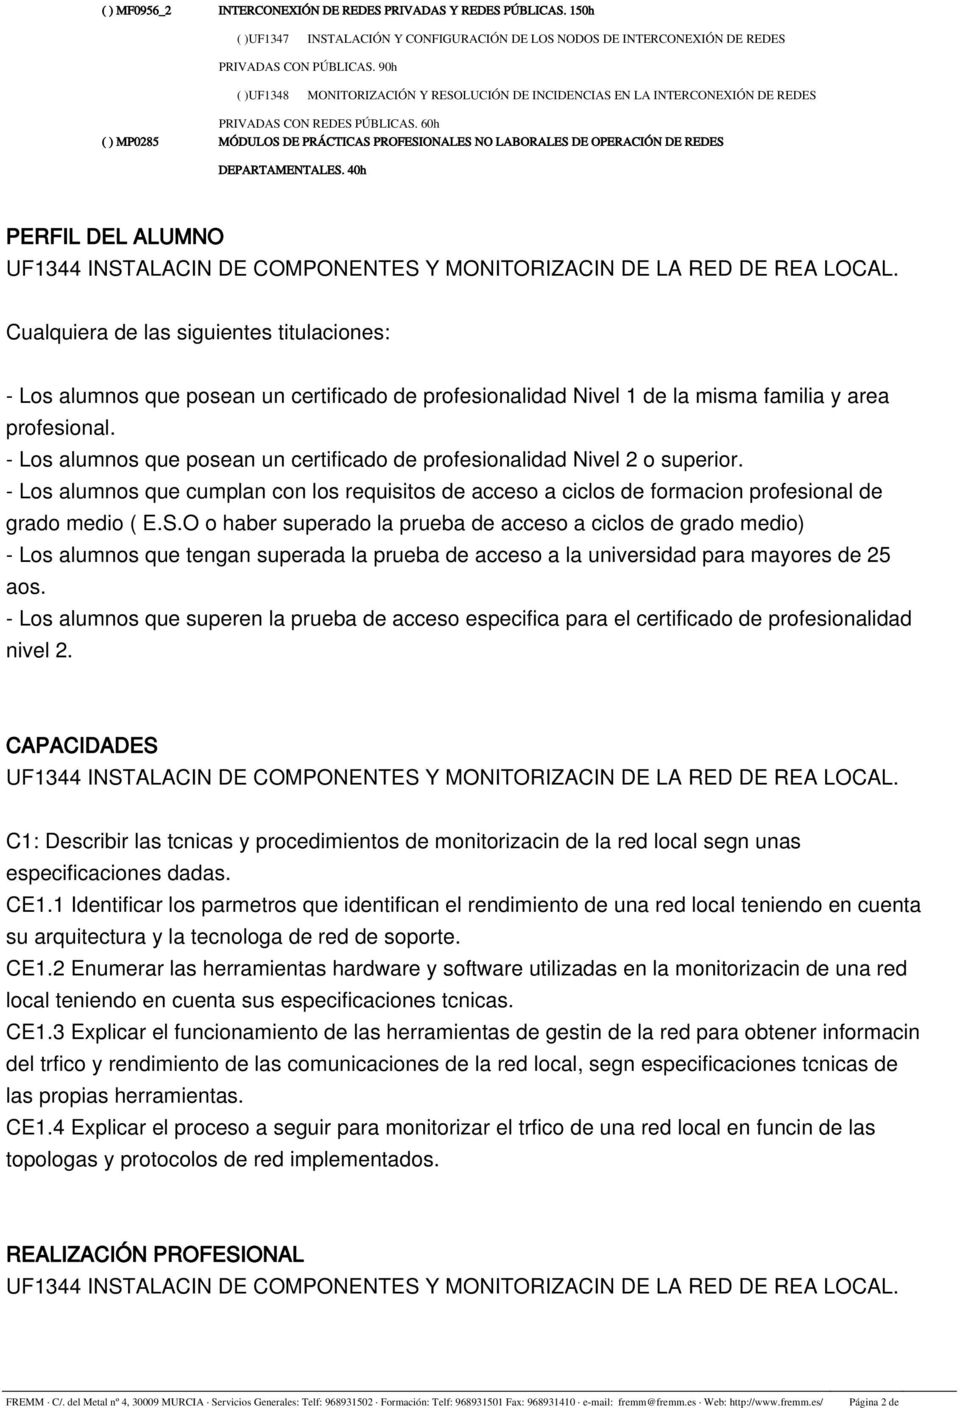 60h ( ) MP028 MÓDULOS DE PRÁCTICAS PROFESIONALES NO LABORALES DE OPERACIÓN DE REDES DEPARTAMENTALES.